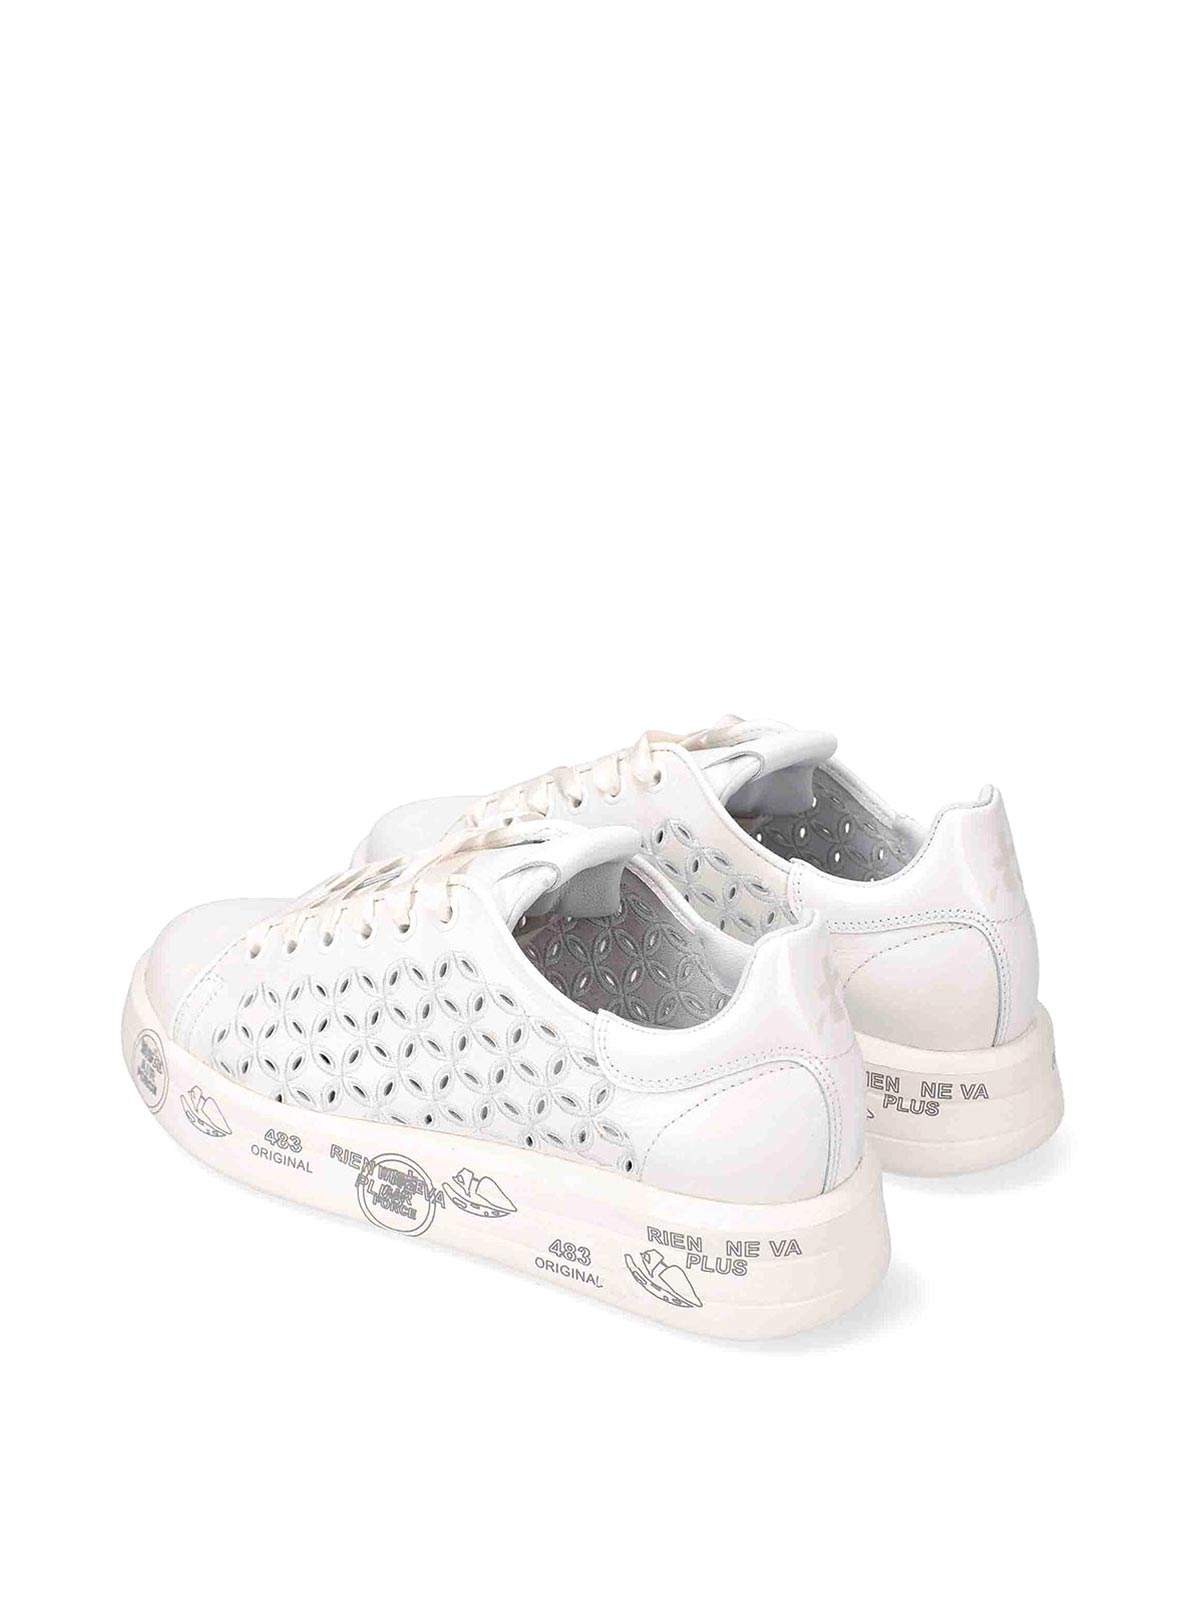 Shop Premiata Leather Sneakers In White